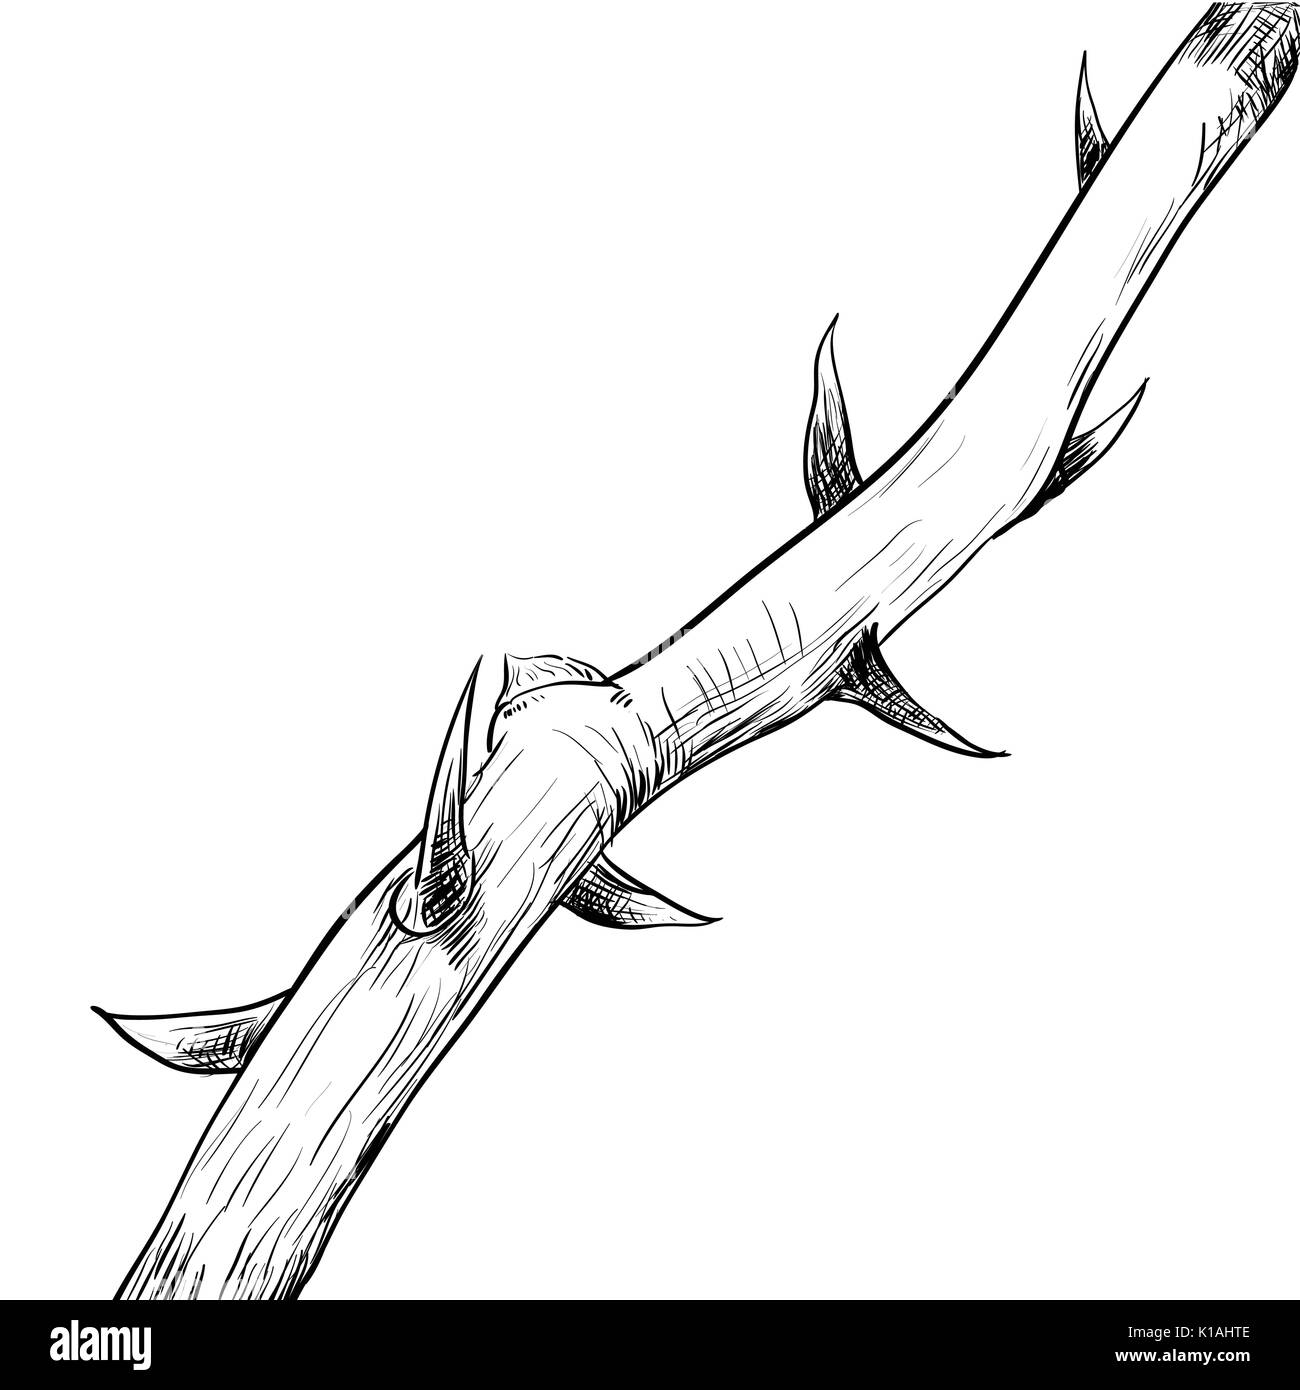 Disegno a mano di Thorn. Bianco e nero linea semplice illustrazione vettoriale per libro da colorare - Linea tracciata vettore Illustrazione Vettoriale